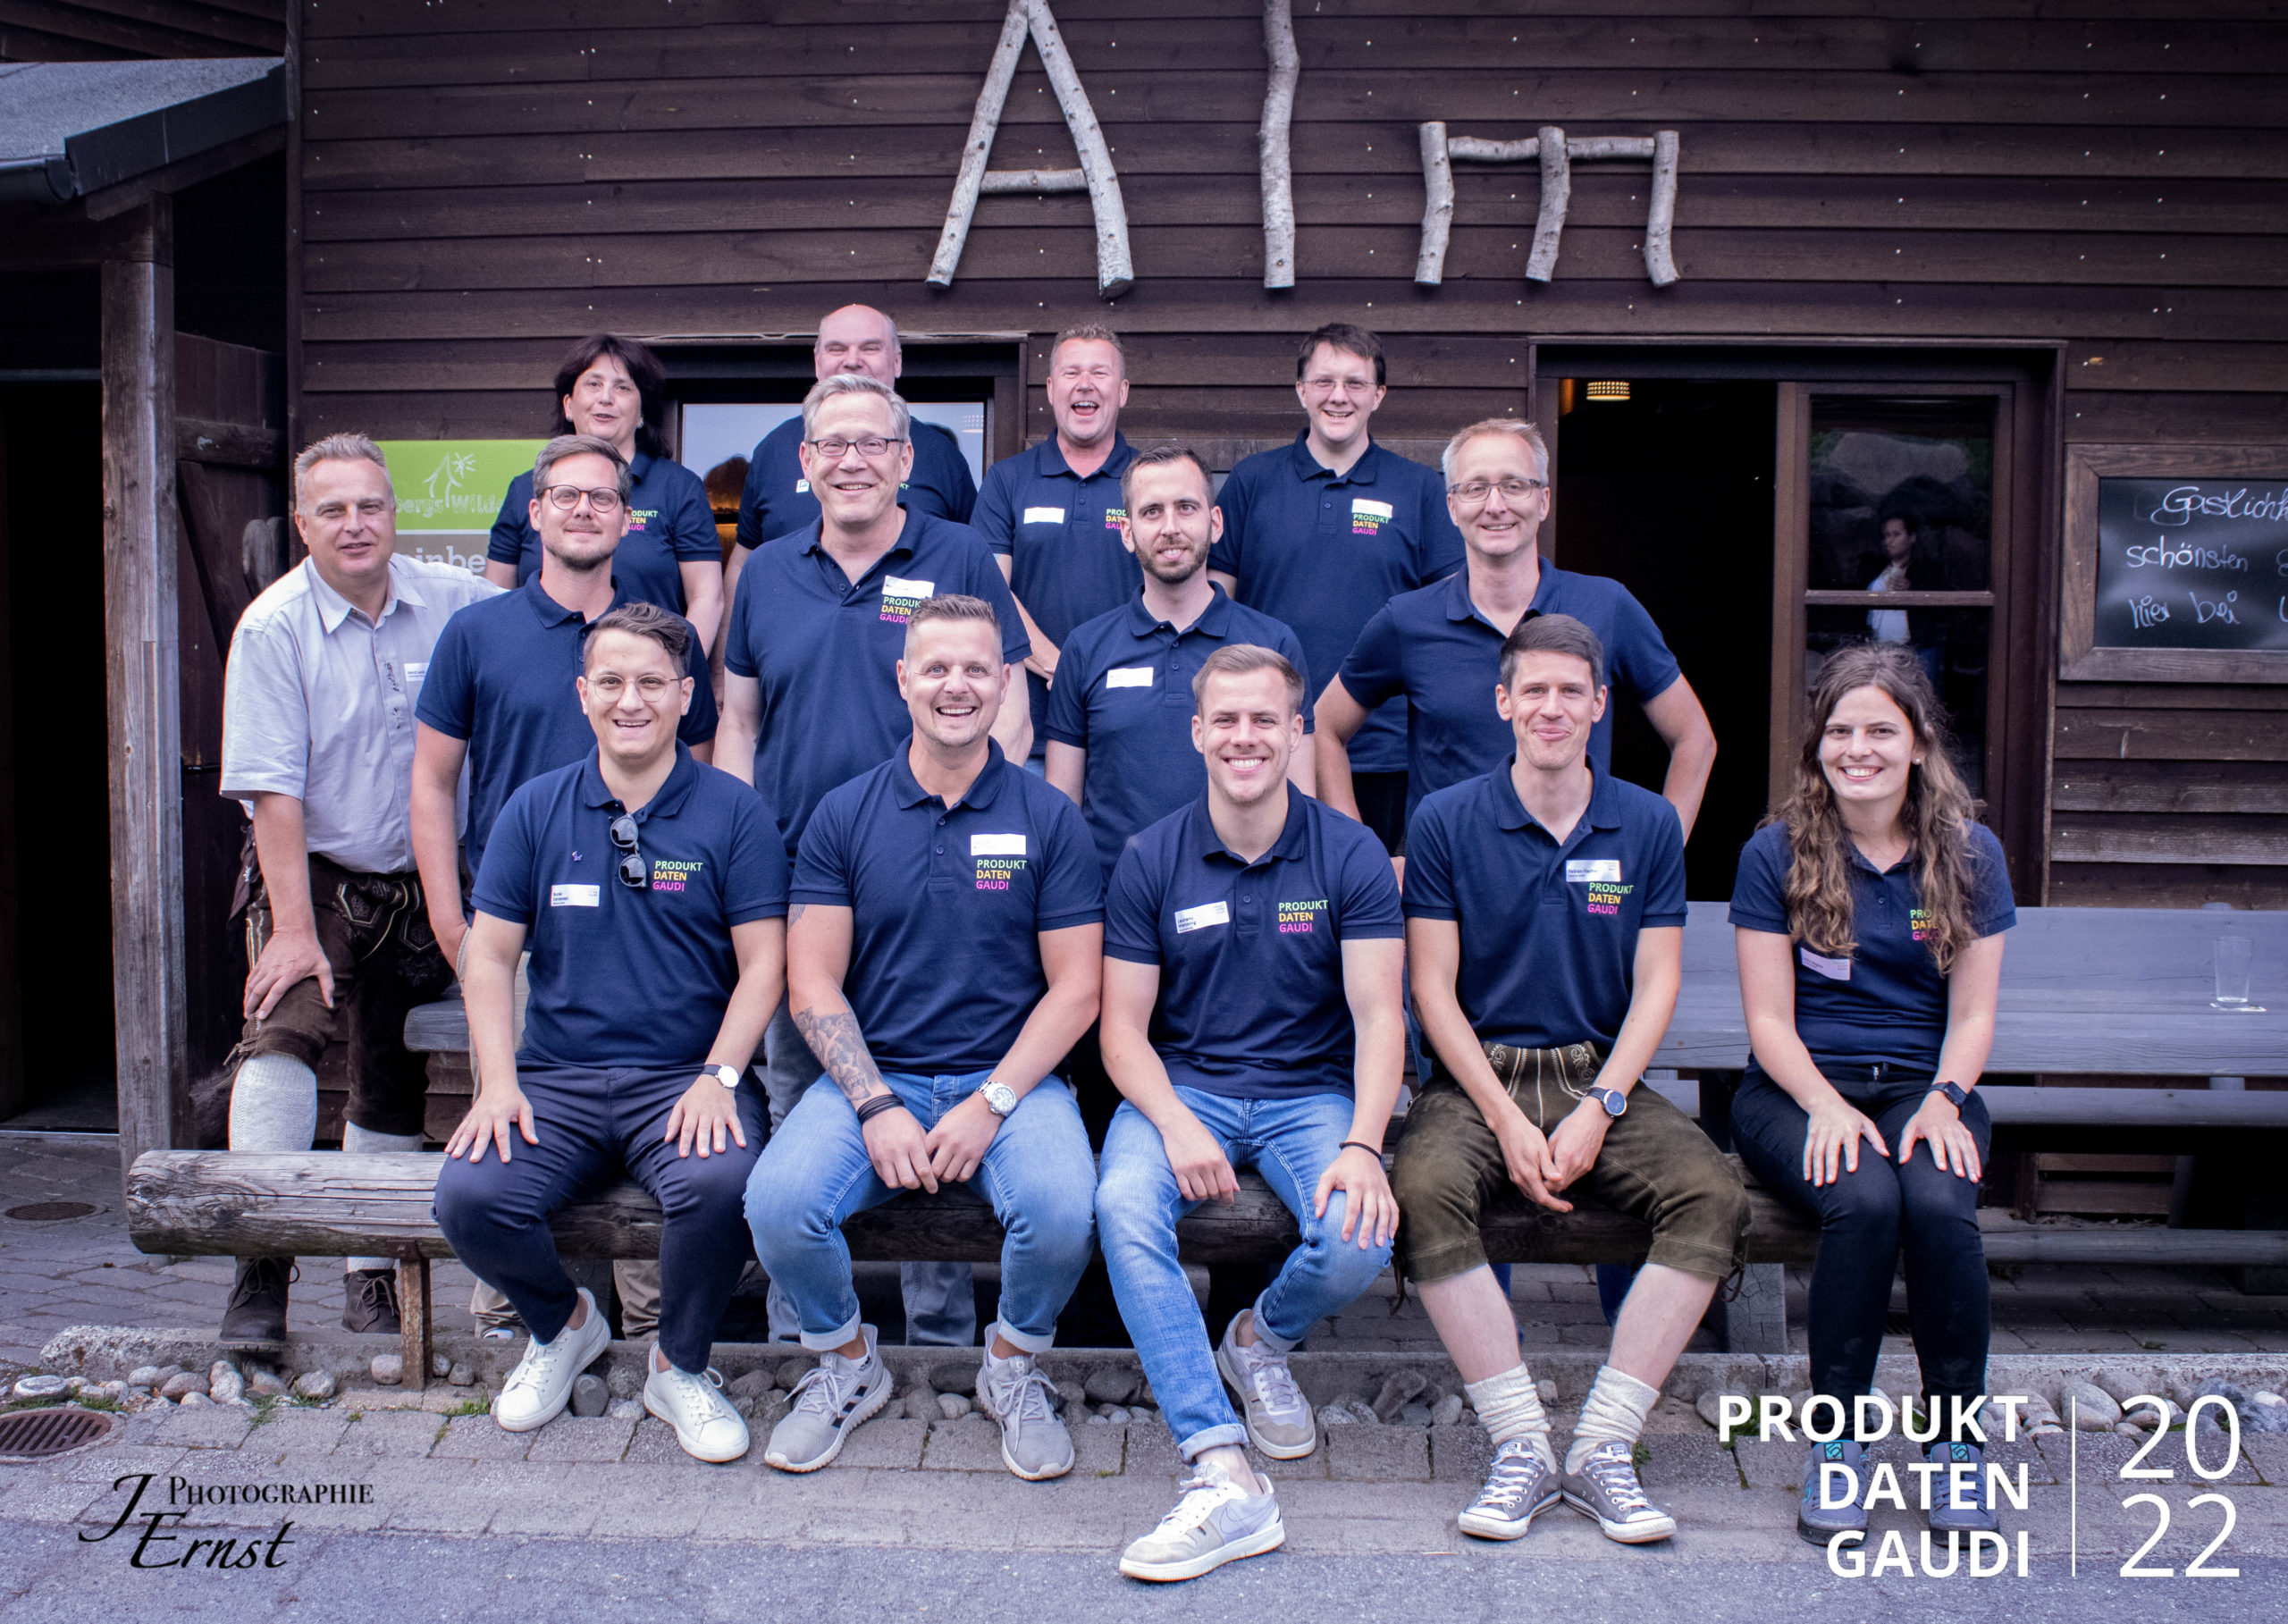 Gruppenfoto der Almöhis und Almöhipartner der Produktdatengaudi 2022